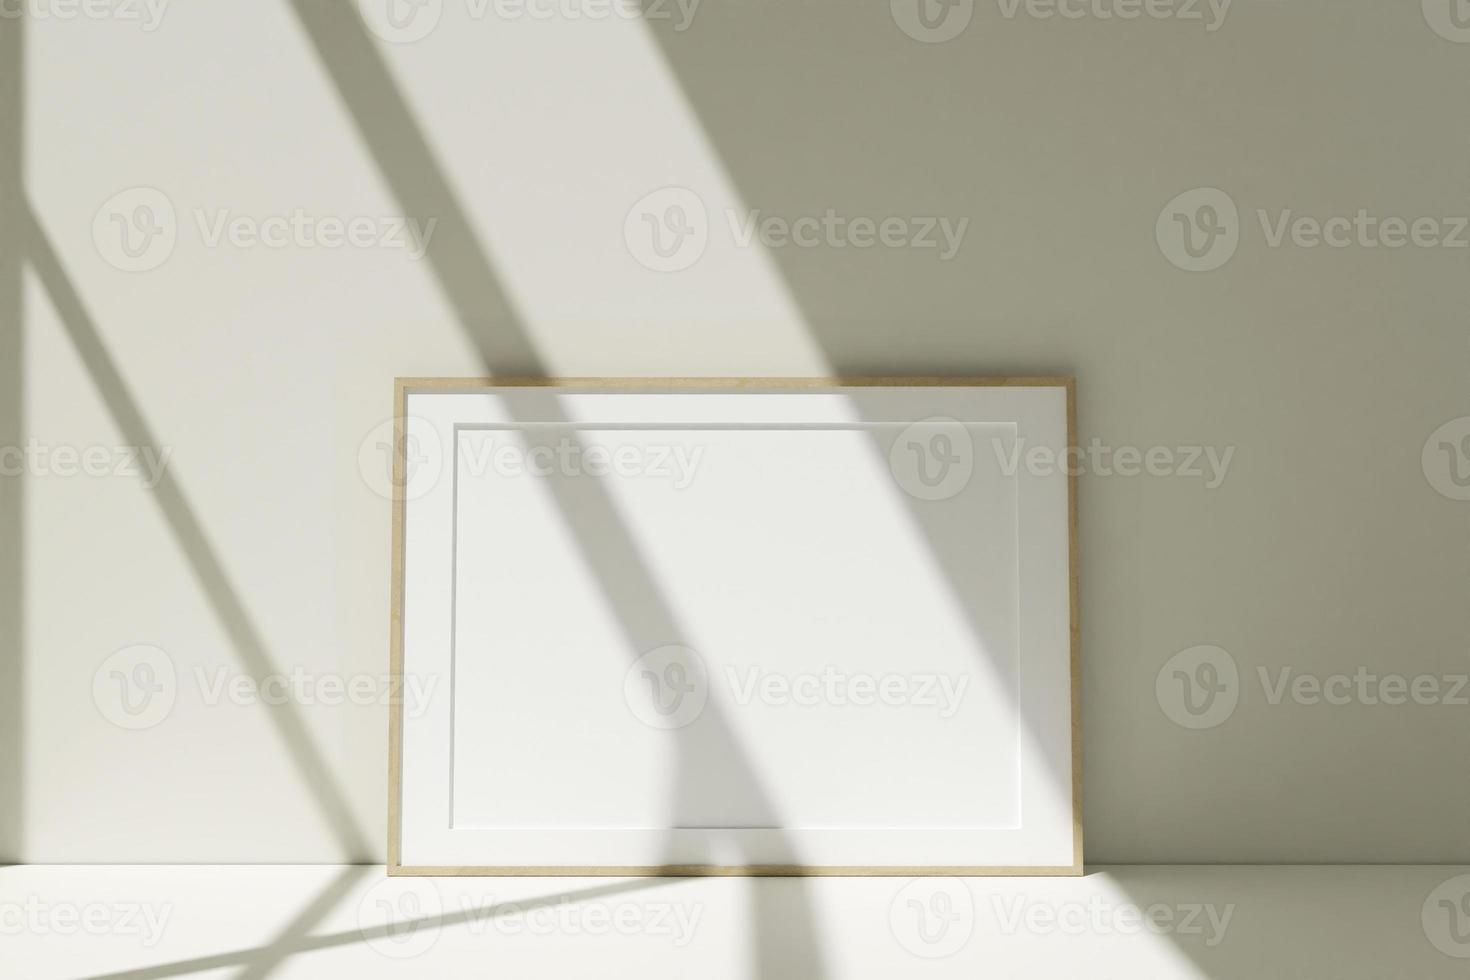 horizontale houten fotolijsten mockup op de vloer leunend tegen de kamermuur met schaduw foto